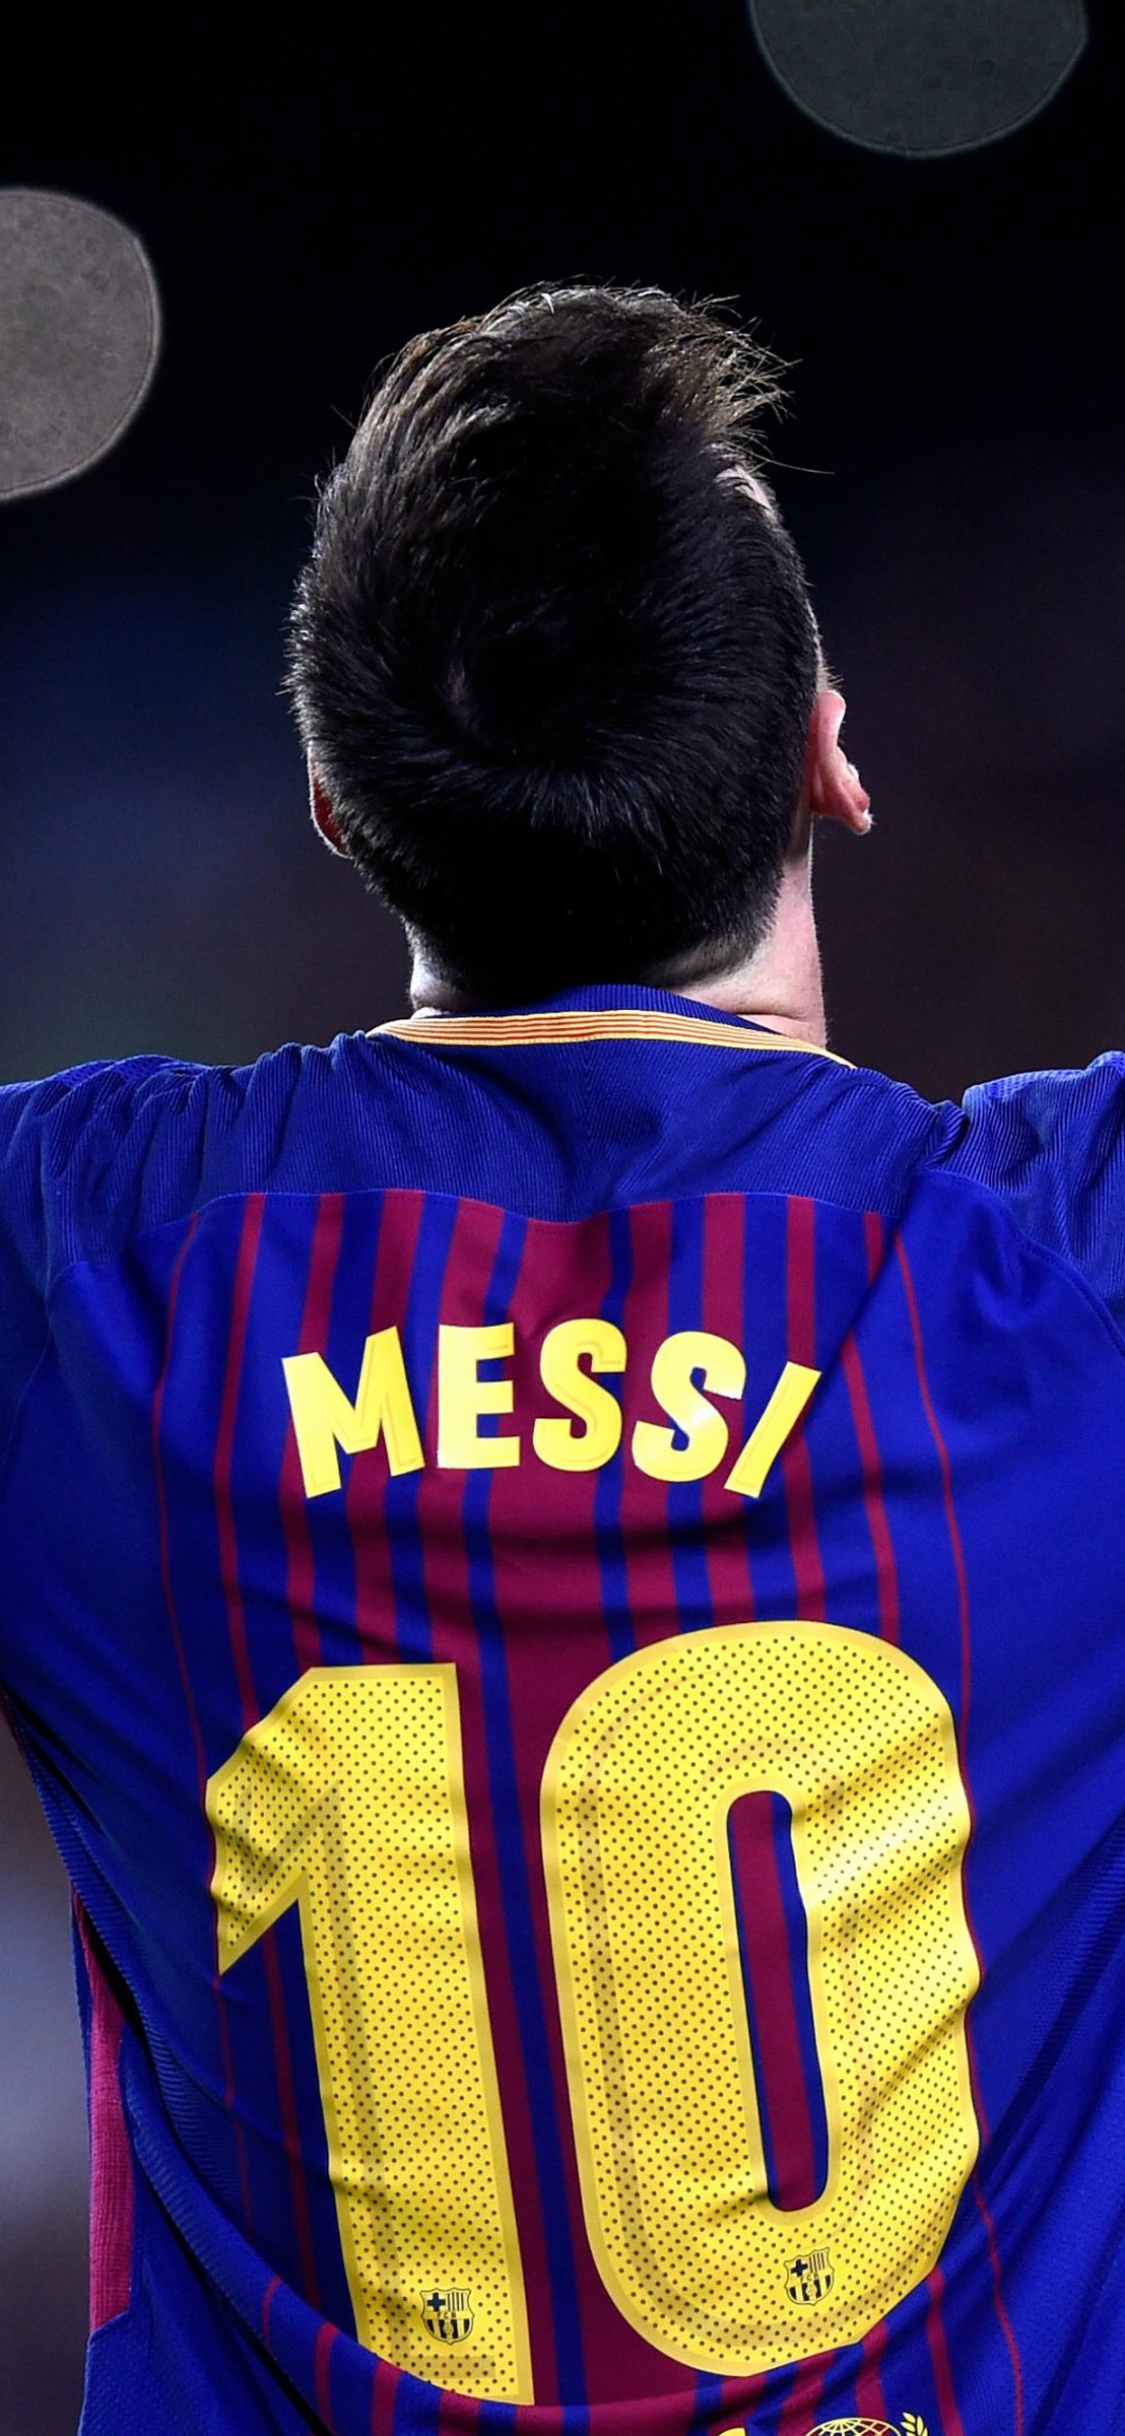 Trang trí màn hình của bạn với Messi Wallpaper 4K, tận hưởng chất lượng hình ảnh tuyệt vời và tinh tế của cầu thủ vĩ đại nhất thế giới. Sẽ không có bức hình nào tốt hơn để cảm nhận được đẳng cấp của Lionel Messi.